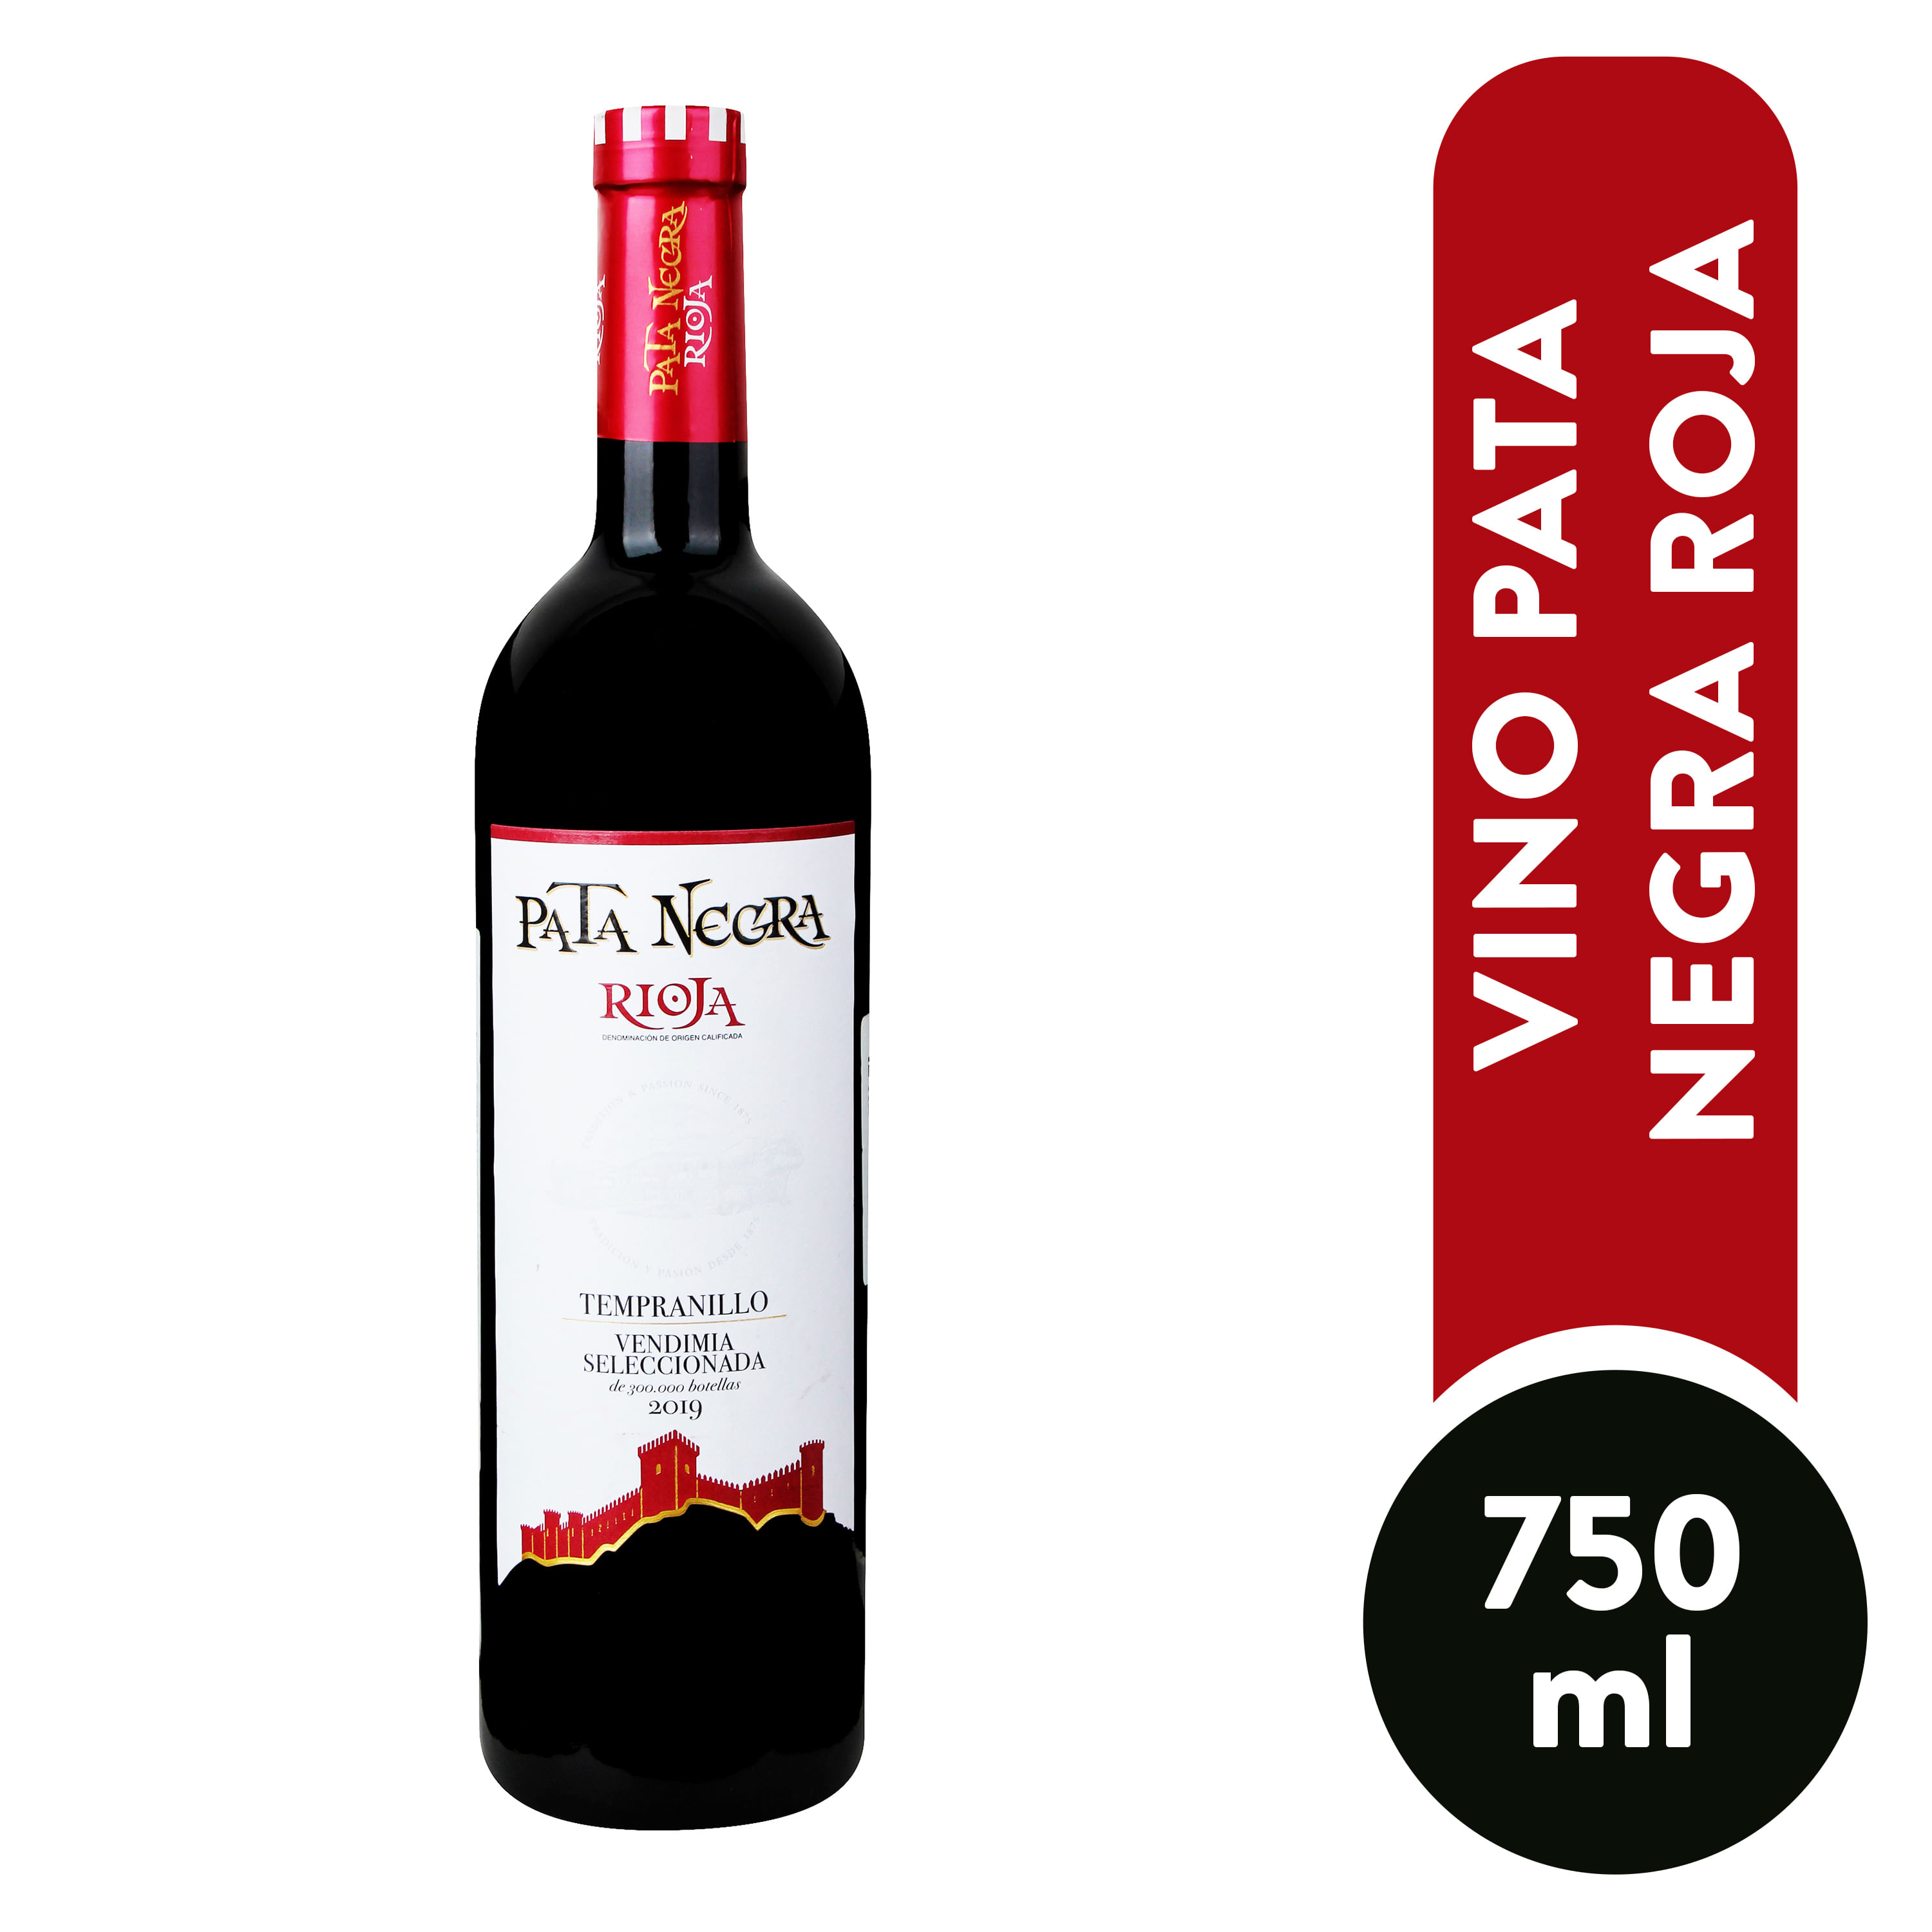 Comprar Vino Pata Negra Roja Gran Seleccion -750ml